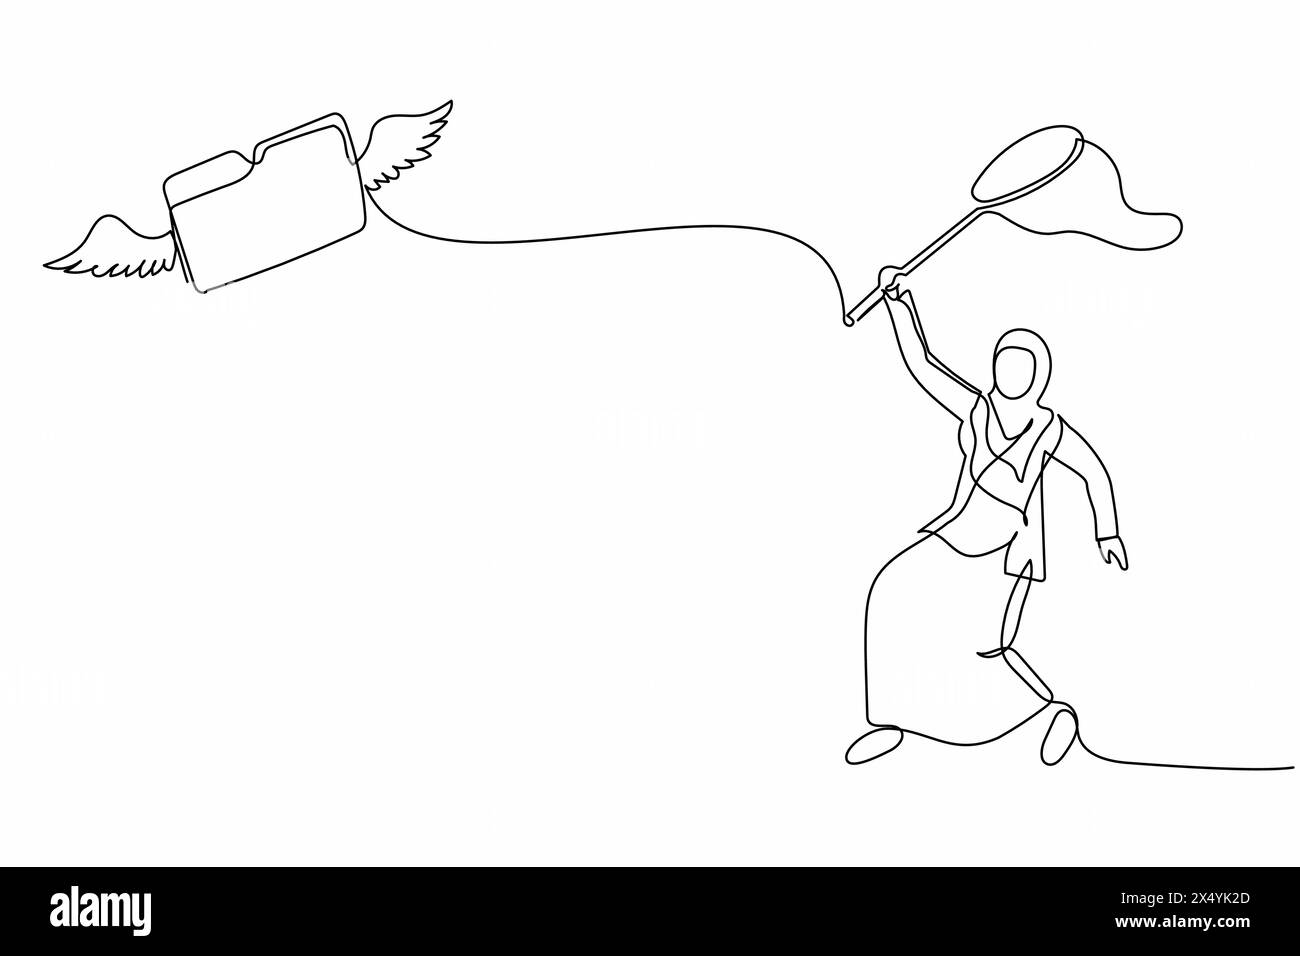 Una linea continua disegnando una donna d'affari araba cercare di catturare cartella volante con la rete farfalla. File di archivio mancante del documento segreto o importante Illustrazione Vettoriale